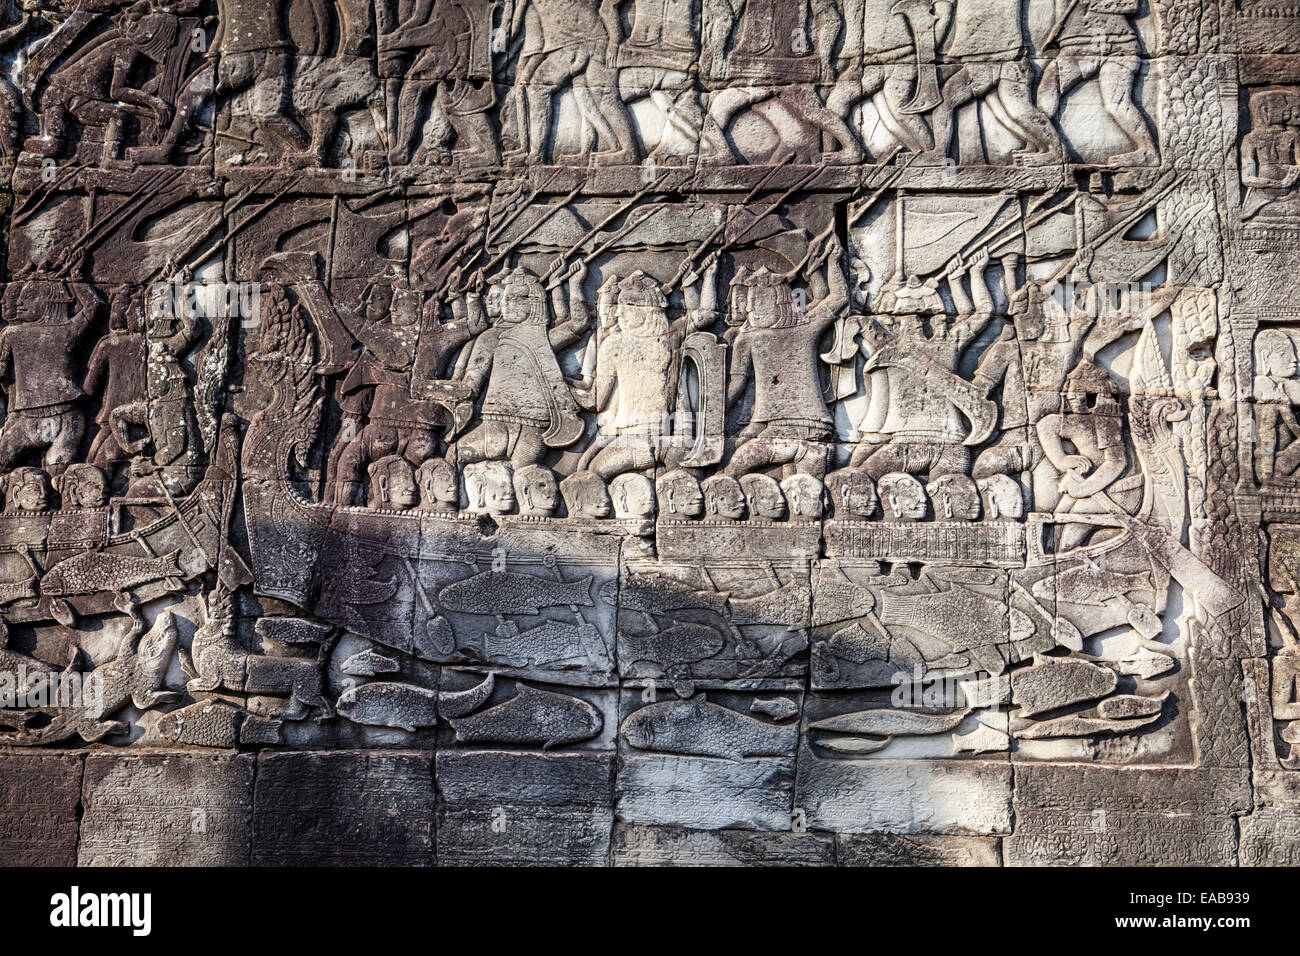 Cambogia, tempio Bayon. Il bassorilievo incisioni. Cham guerrieri impegnati in un 12esimo secolo battaglia navale, attaccando i Khmer. Foto Stock